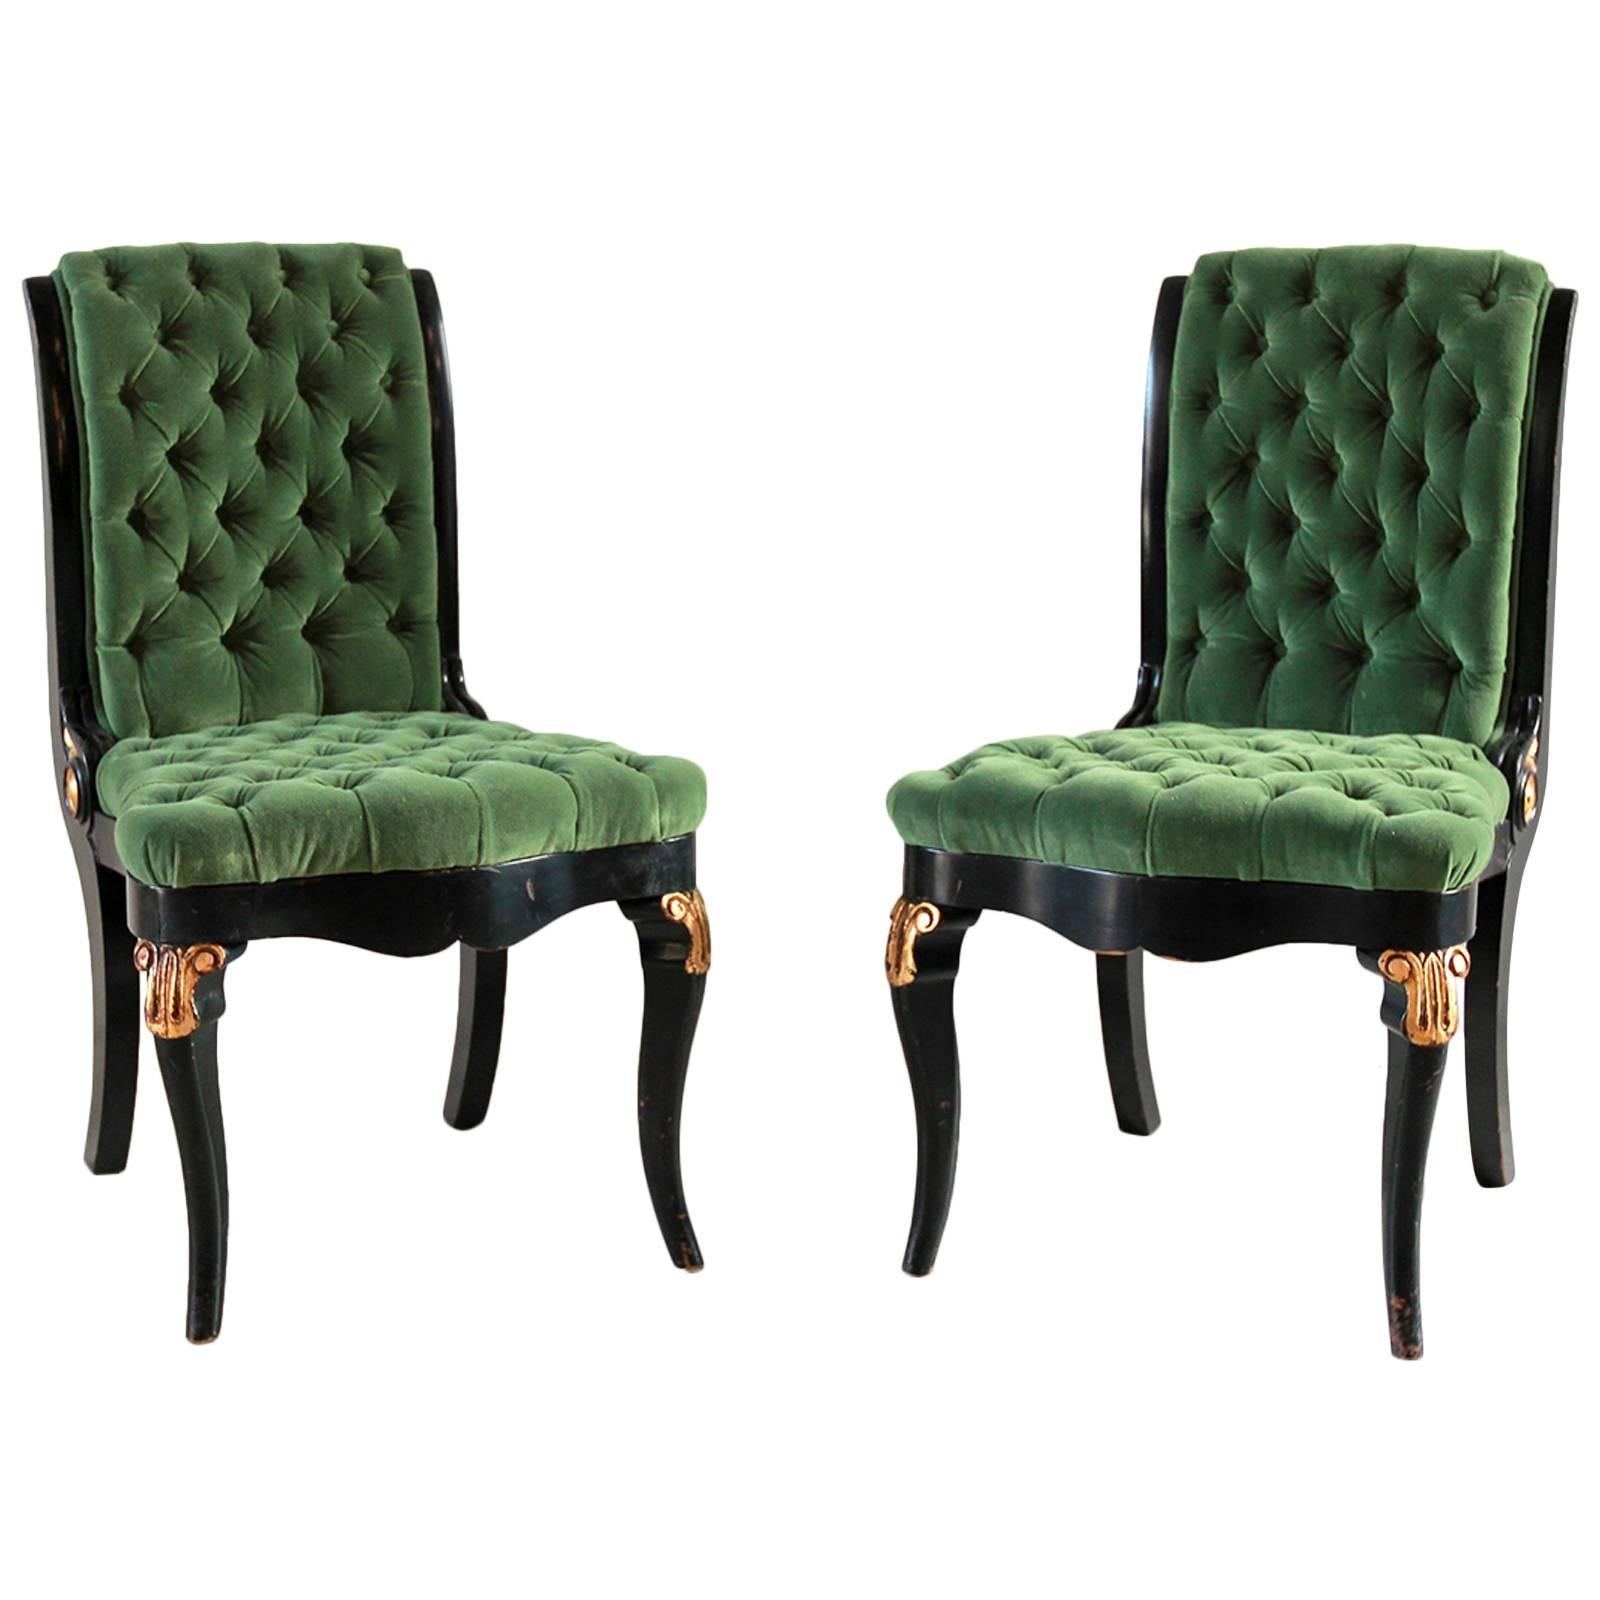 Black and Gold Painted Regency Chair Upholstered in Green Velvet